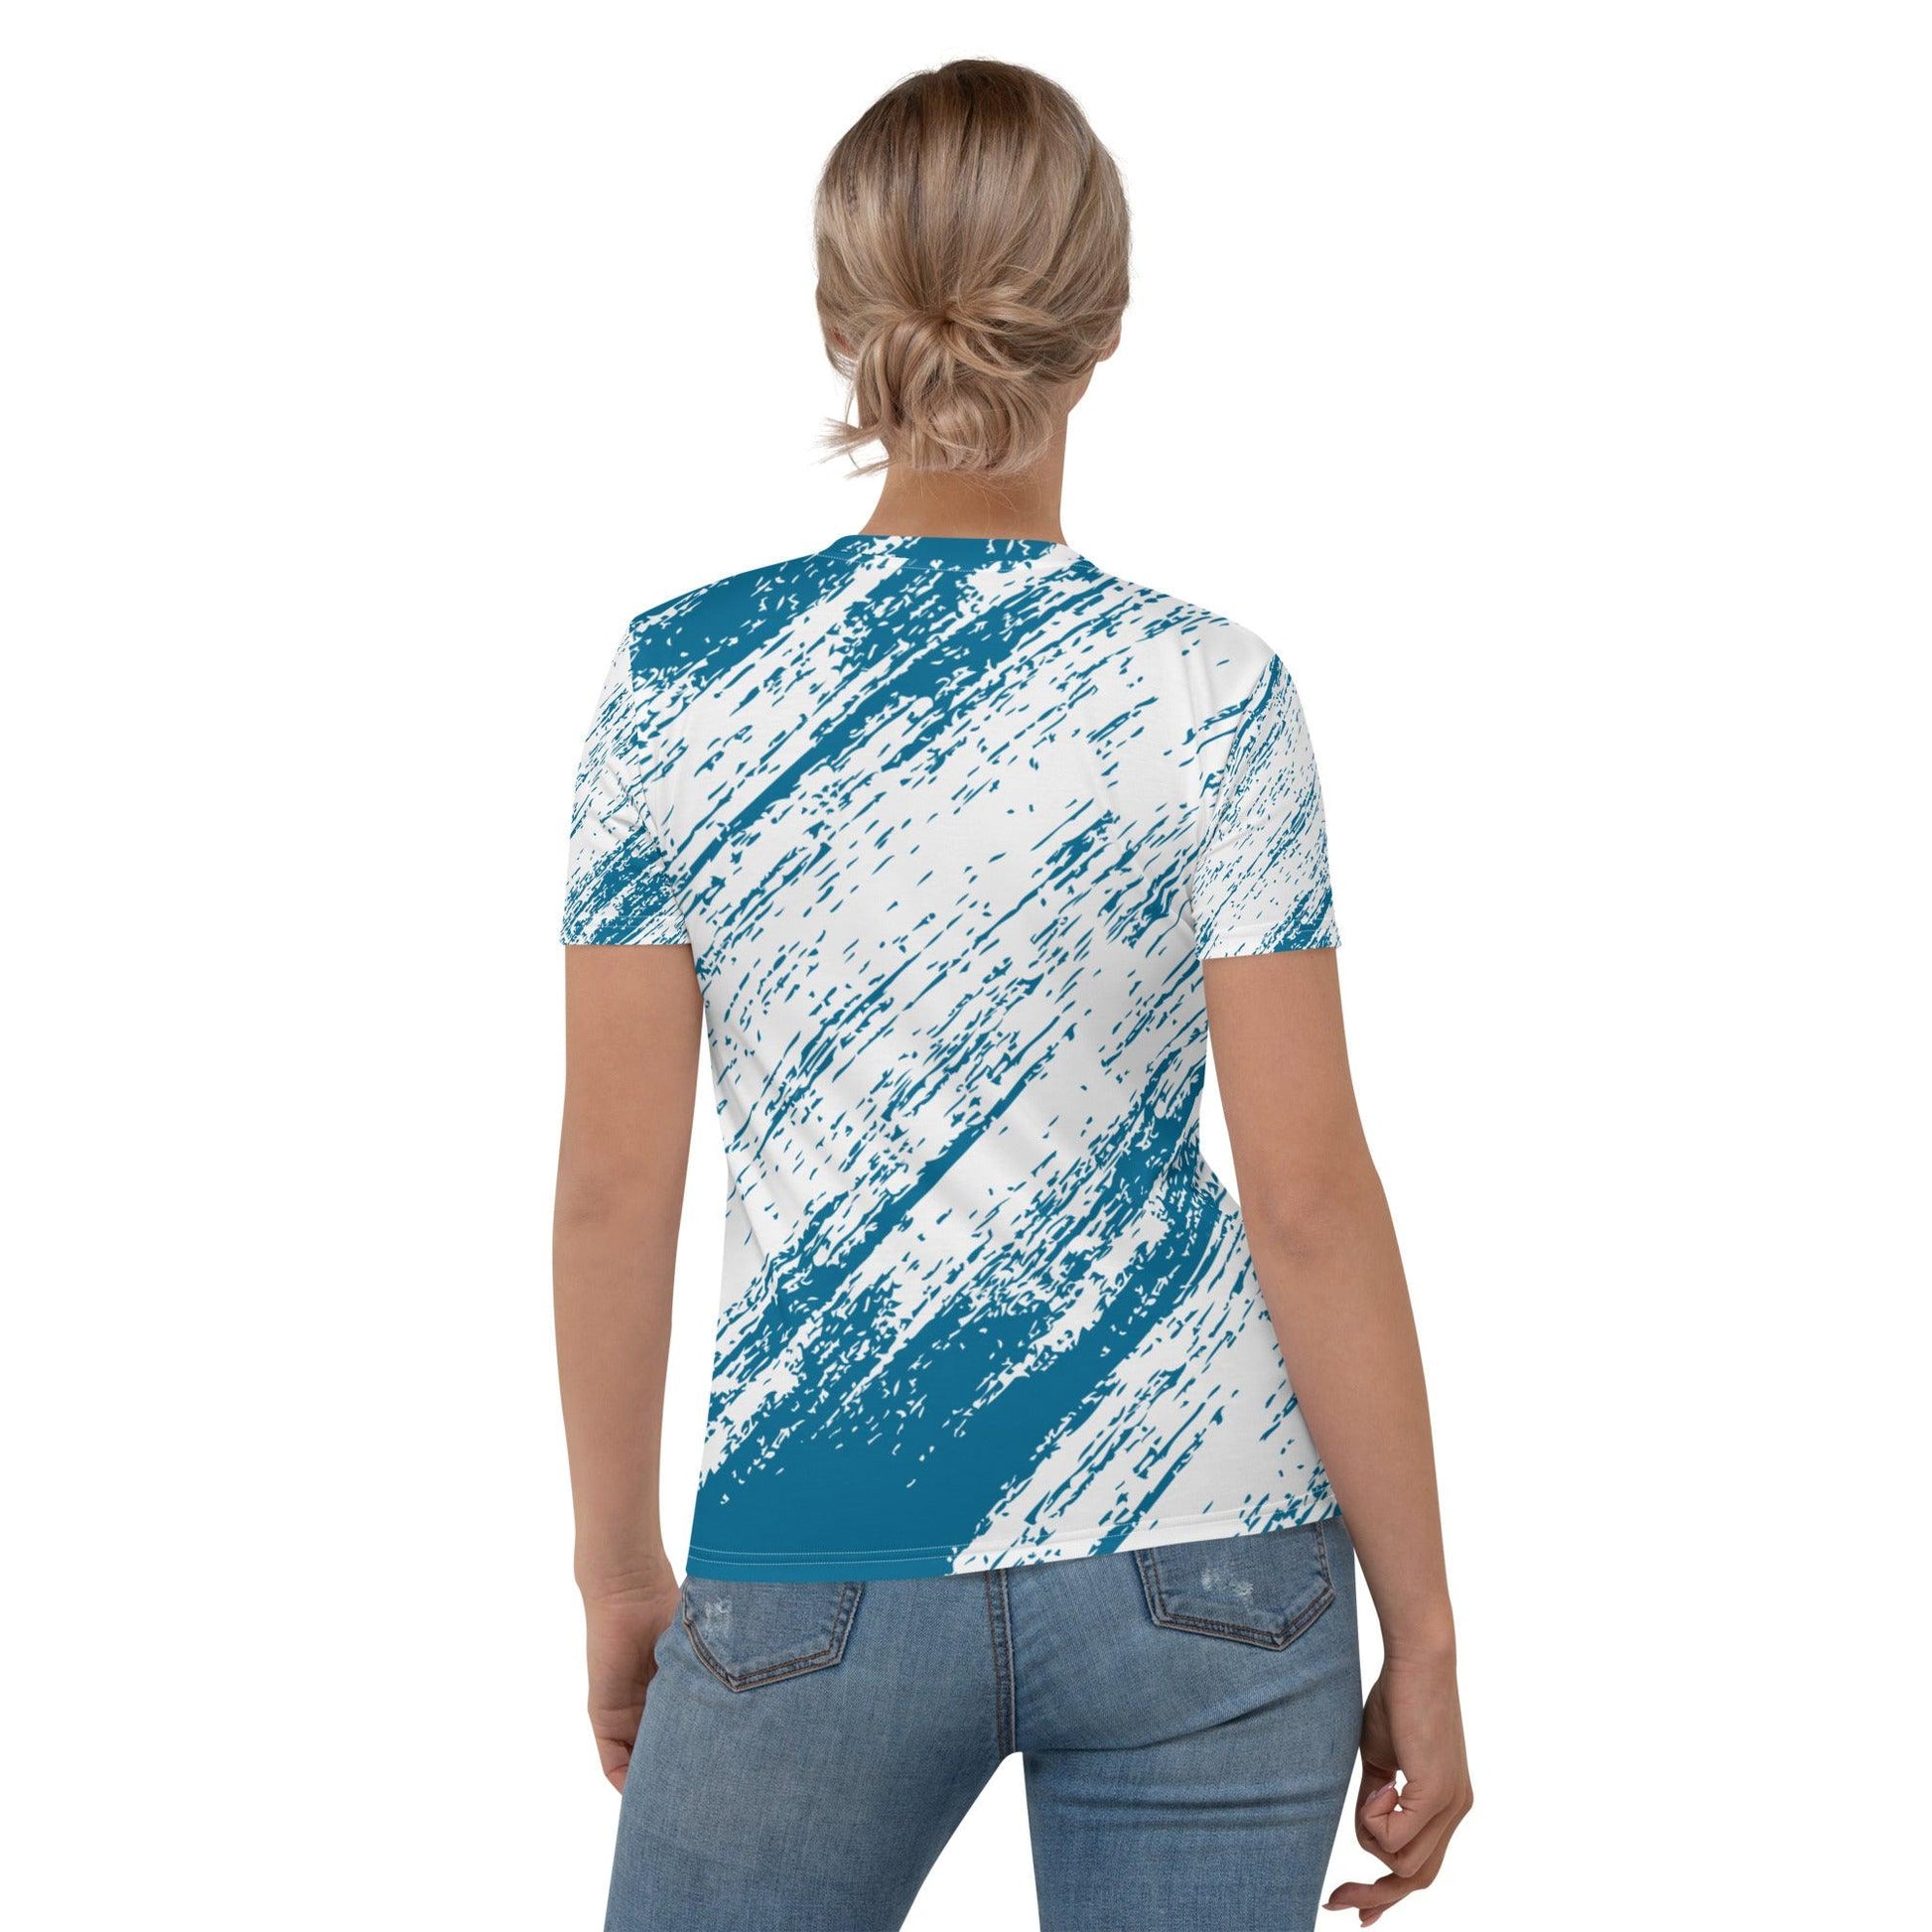 Rain Print T-Shirt - L & M Kee, LLC